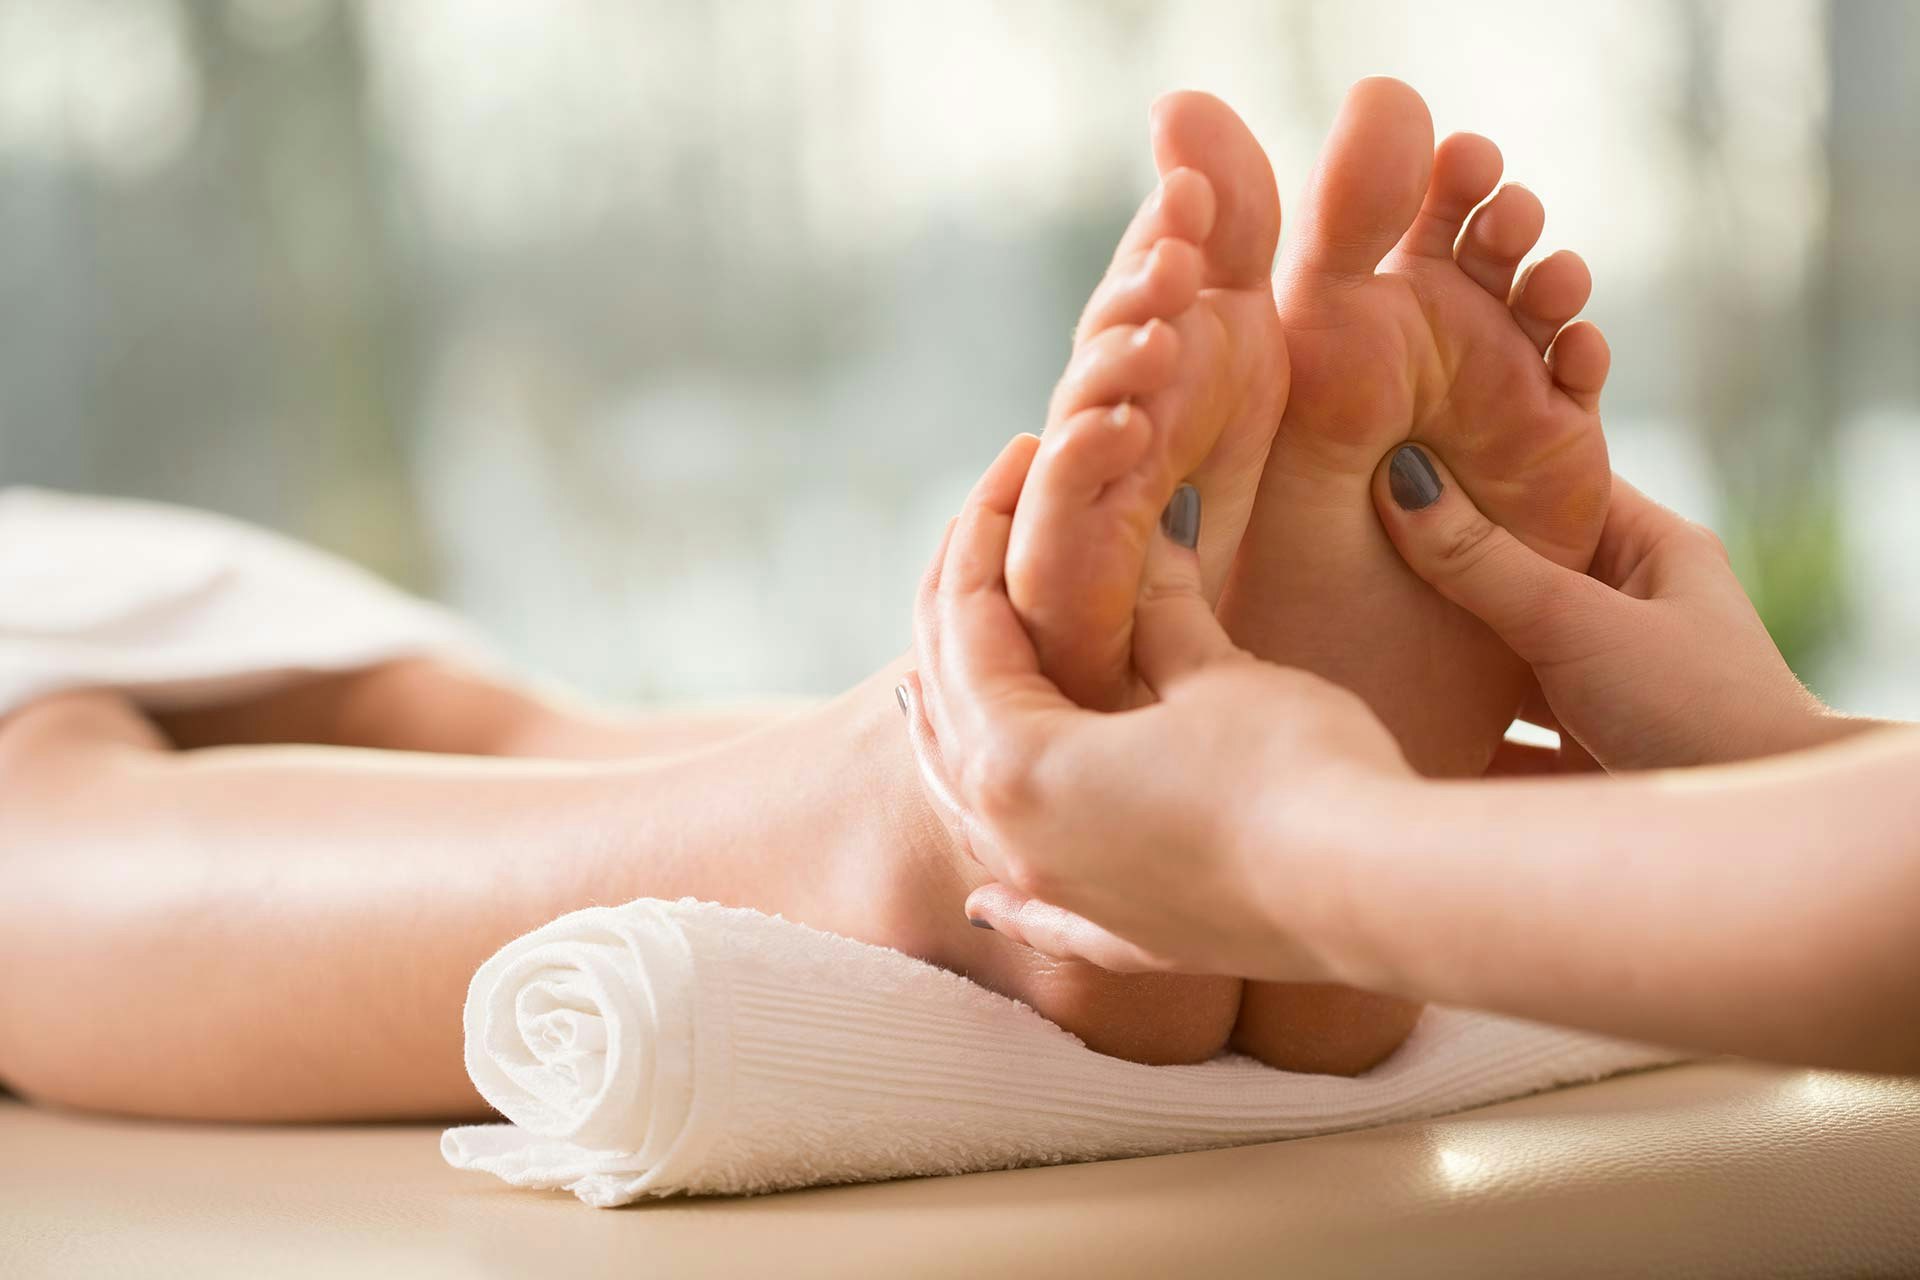 Reflexzonen Massage -&nbsp;<br>
Spa für Hände und Füsse